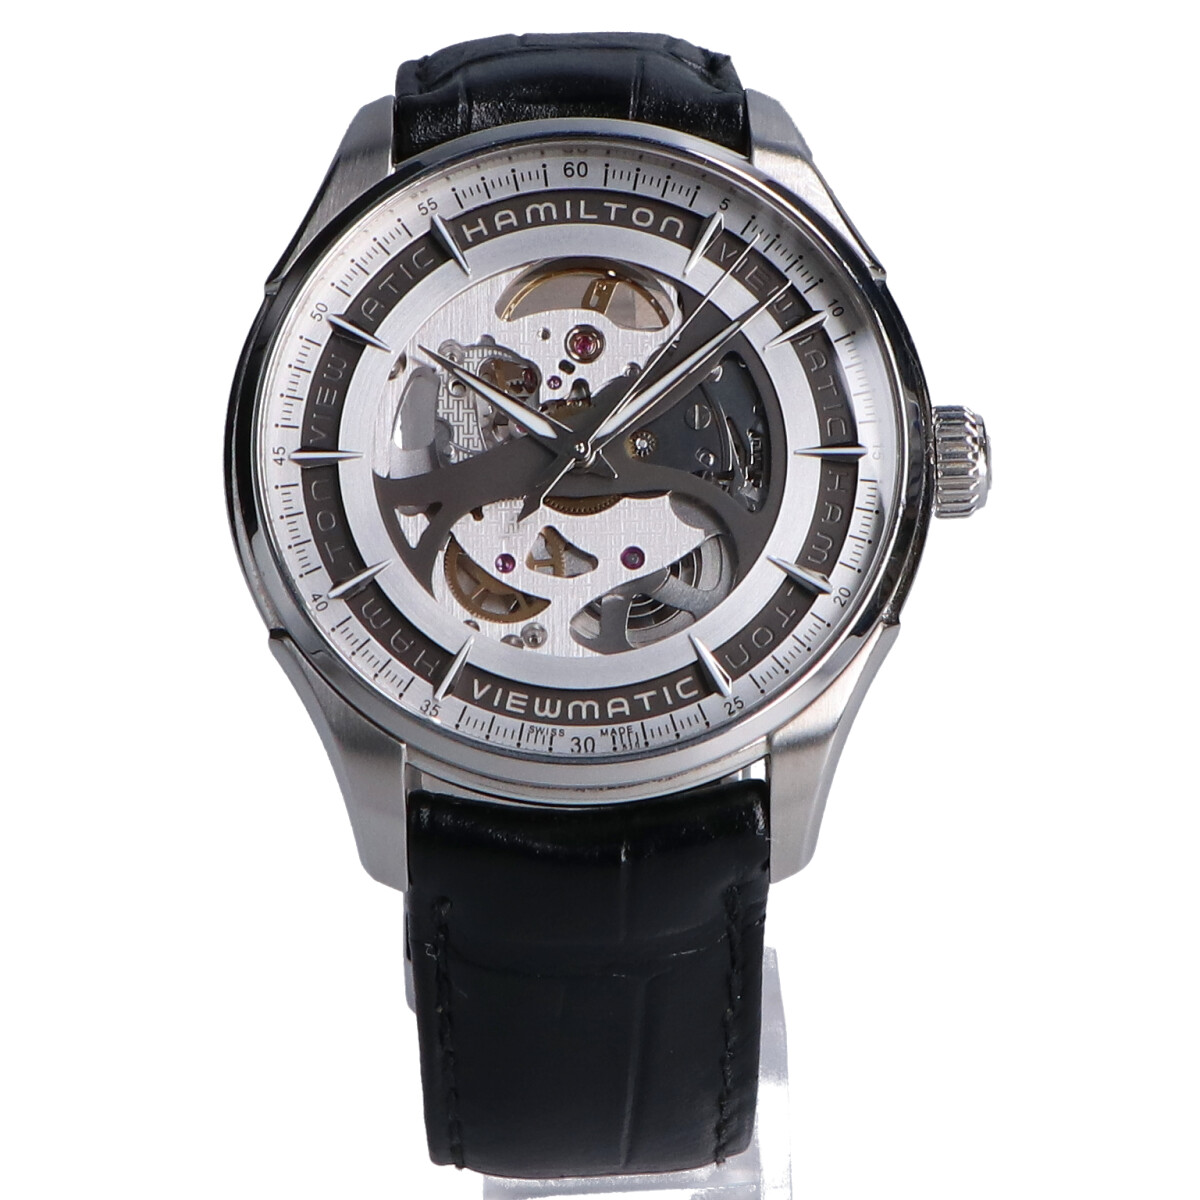 ハミルトンのH42555751 ジャズマスター ビューマチック スケルトン ジェント 自動巻き腕時計の買取実績です。